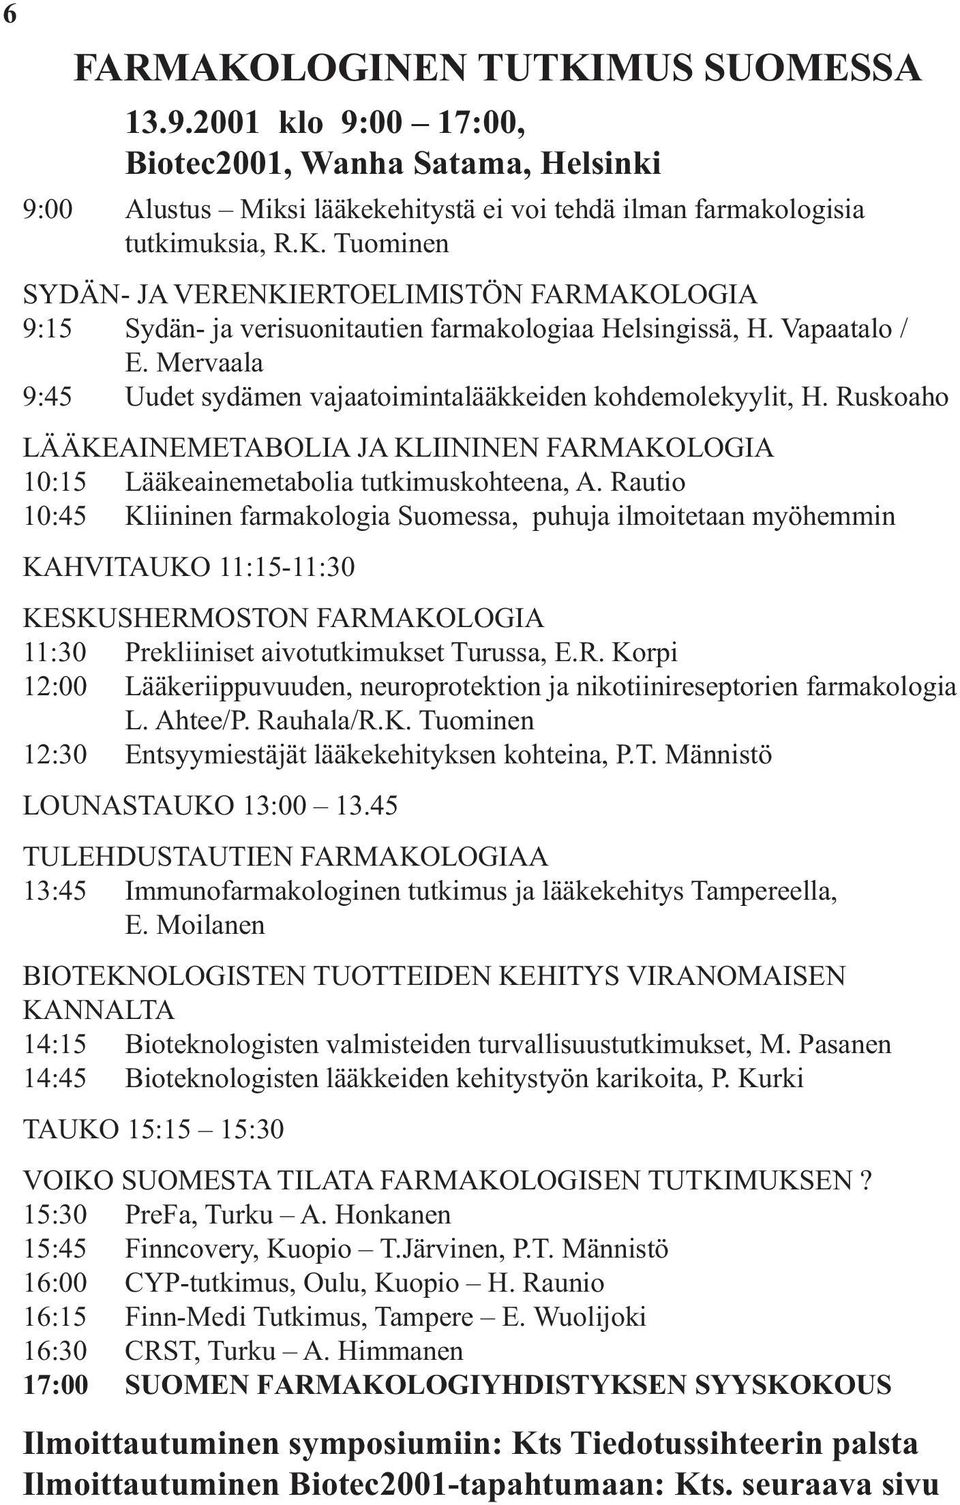 Rautio 10:45 Kliininen farmakologia Suomessa, puhuja ilmoitetaan myöhemmin KAHVITAUKO 11:15-11:30 KESKUSHERMOSTON FARMAKOLOGIA 11:30 Prekliiniset aivotutkimukset Turussa, E.R. Korpi 12:00 Lääkeriippuvuuden, neuroprotektion ja nikotiinireseptorien farmakologia L.